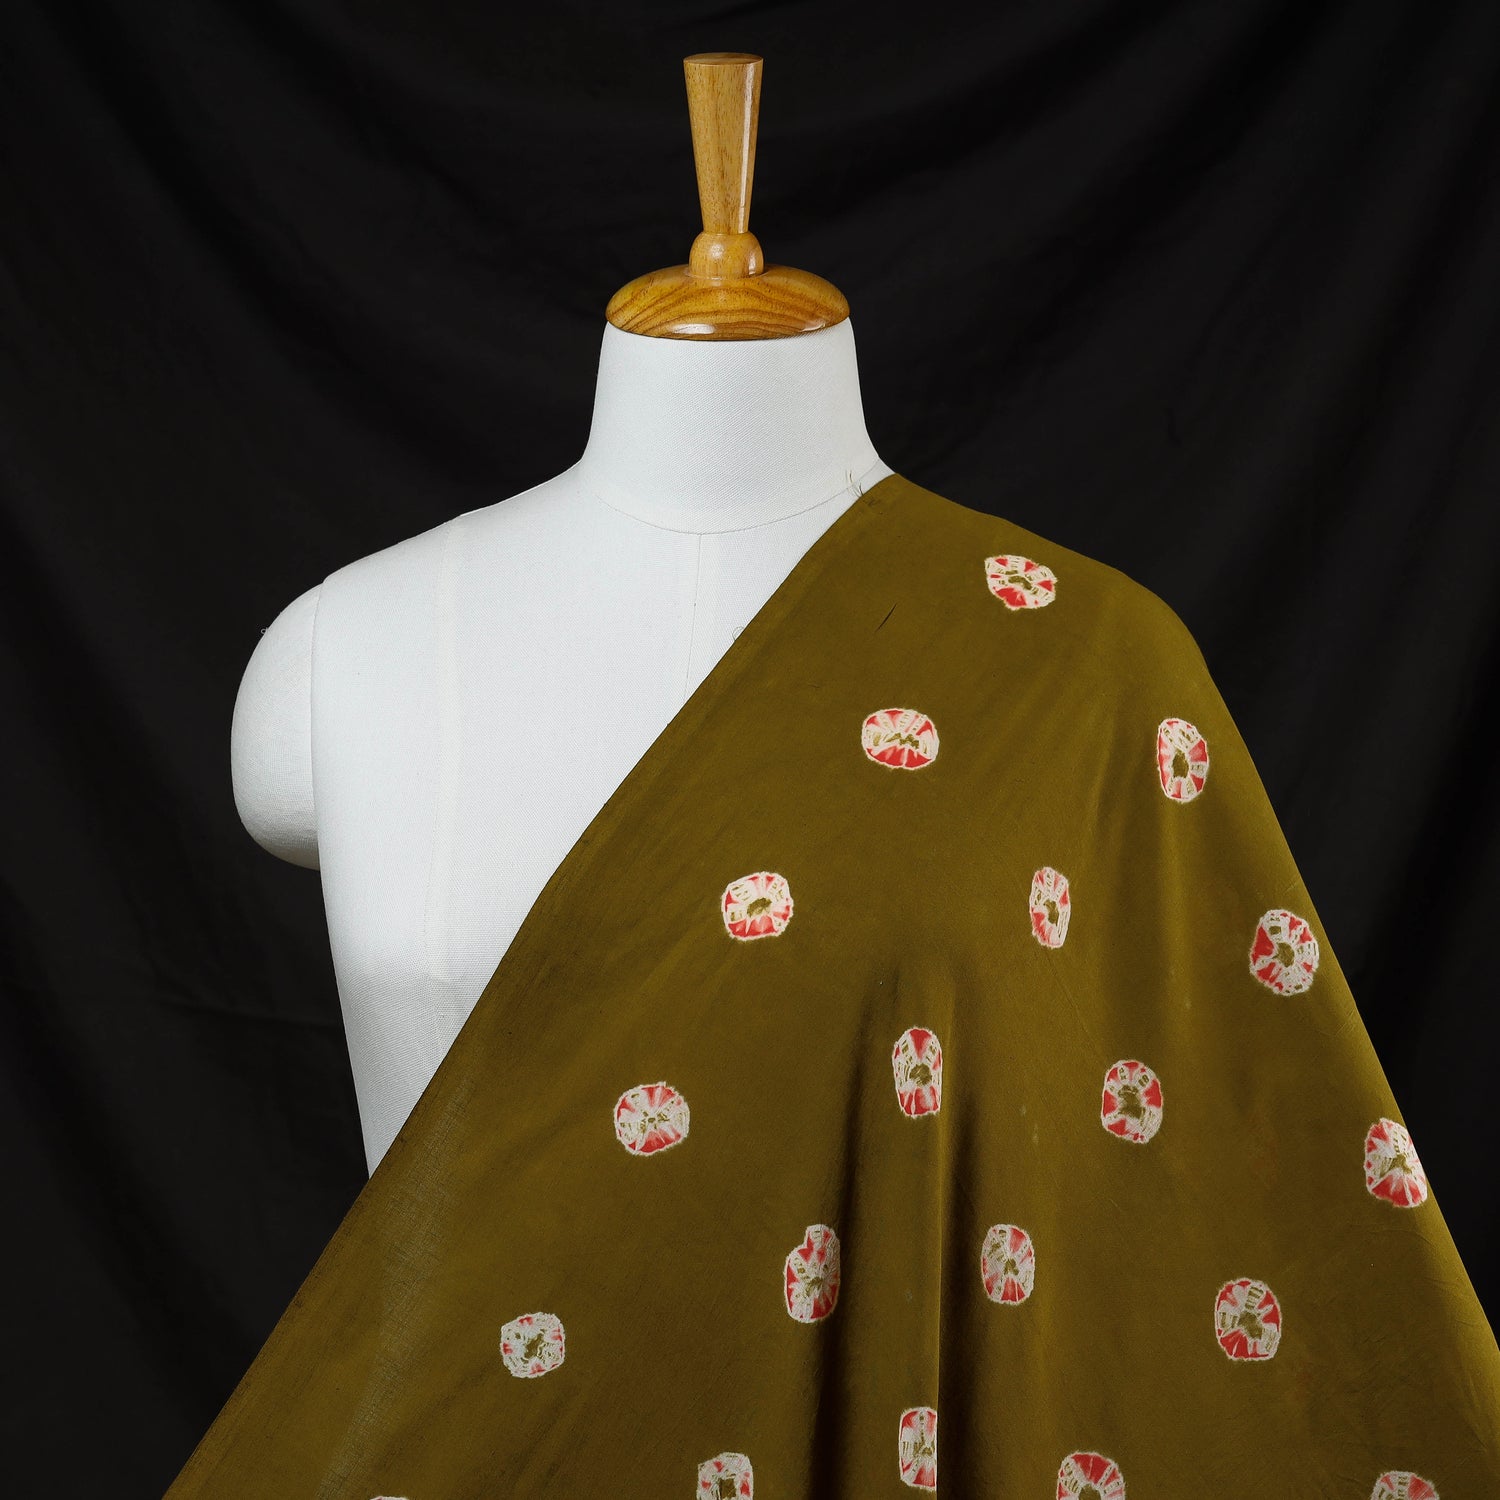 Pink Cotton Shibori Tie Dye Fabric at best price in Jaipur